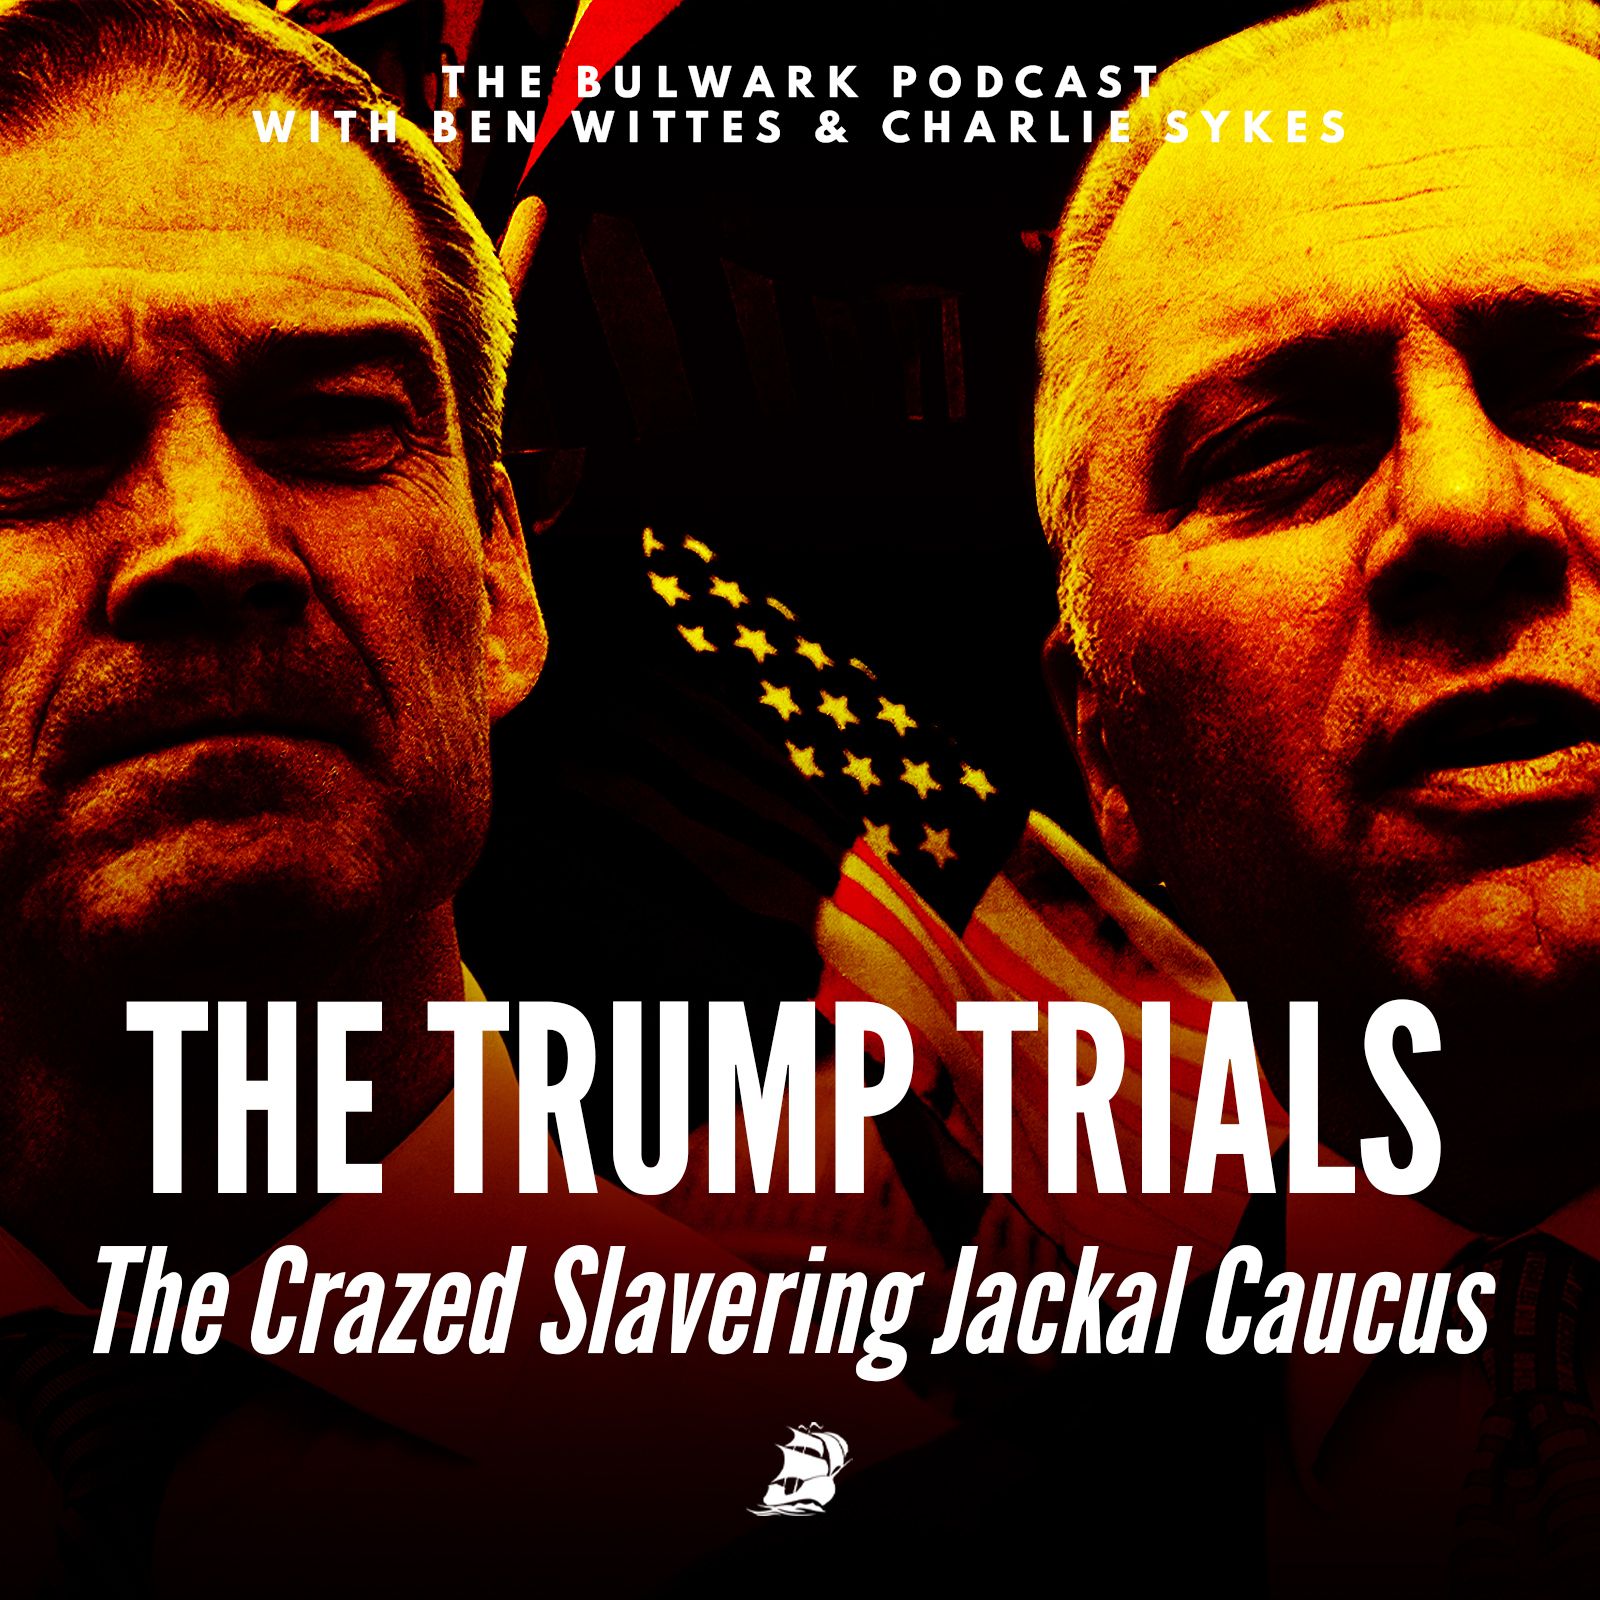 The Crazed Slavering Jackal Caucus